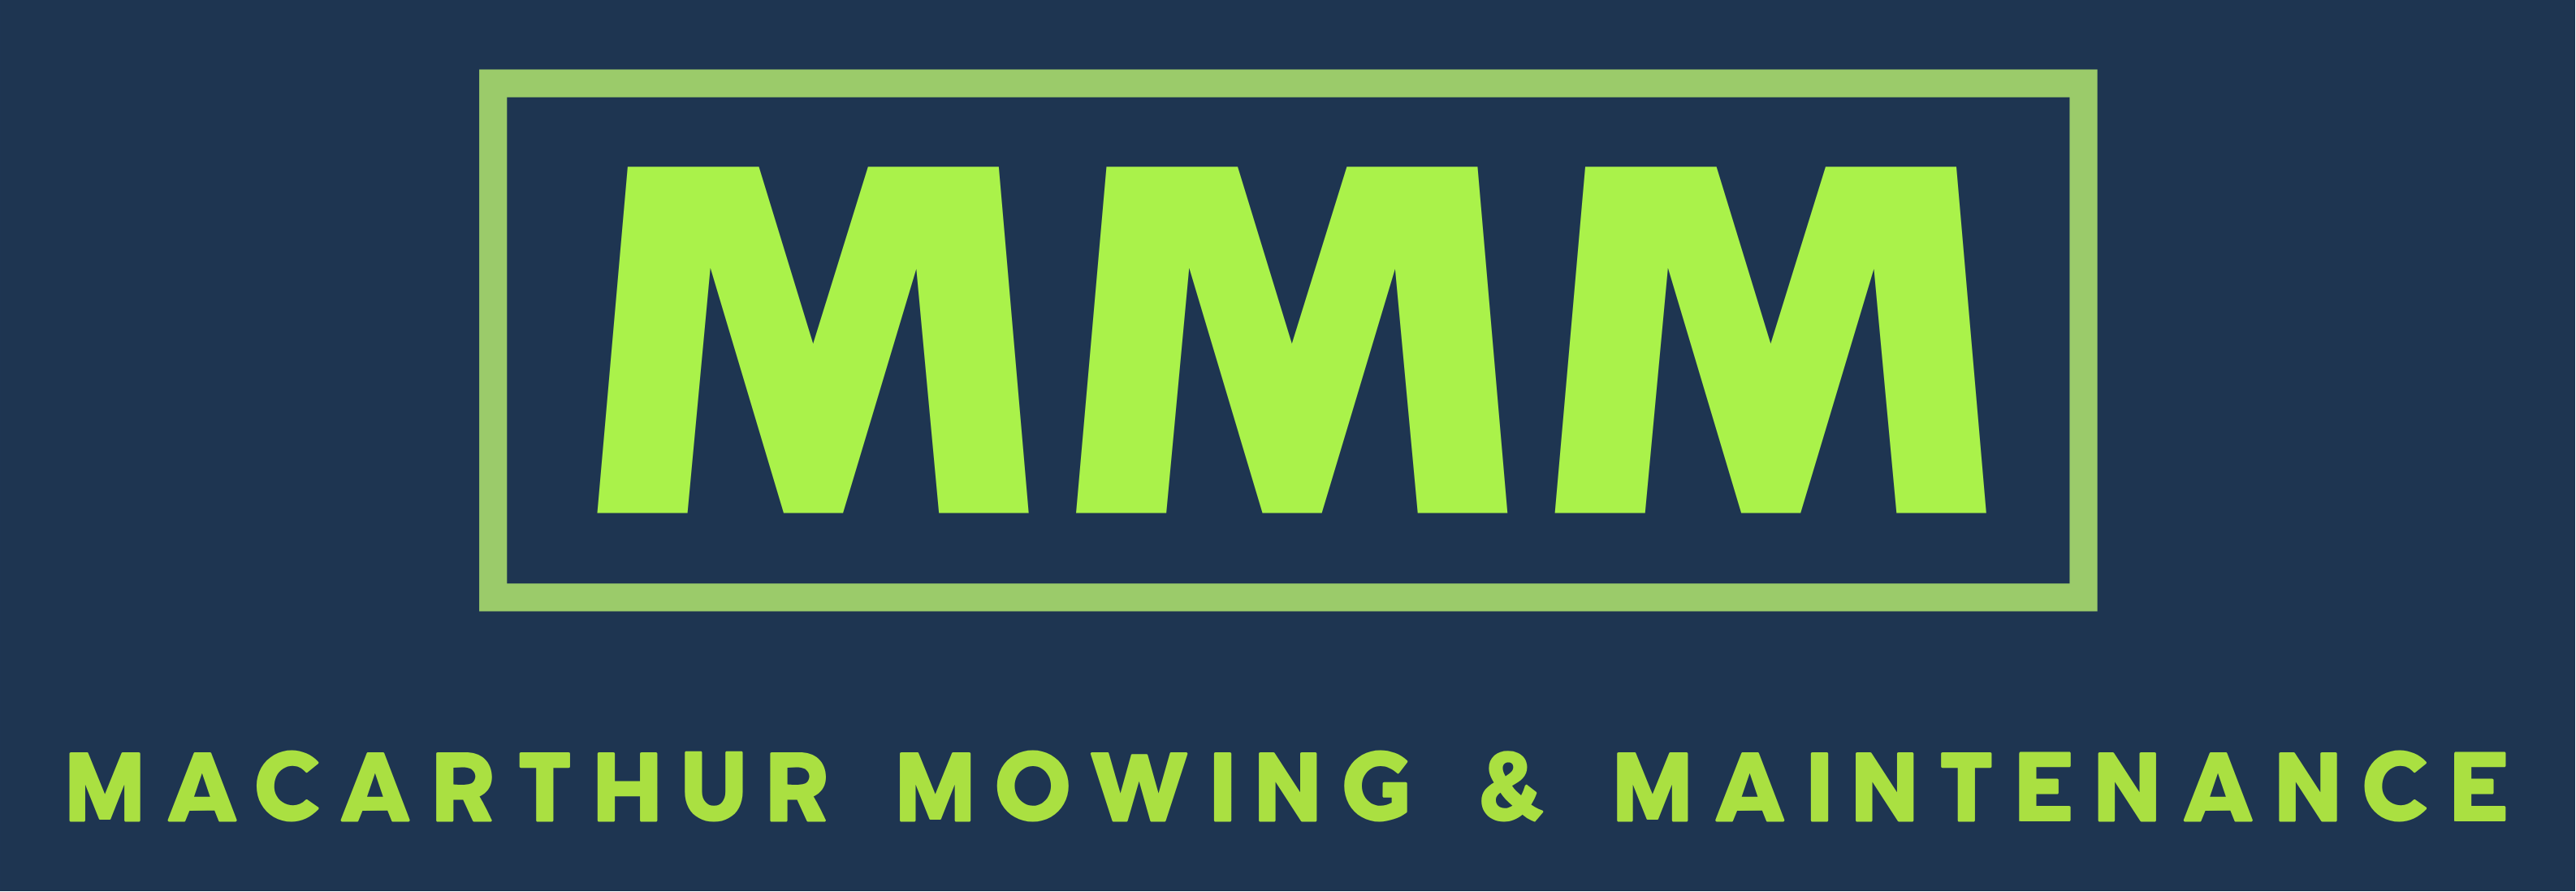 Macarthur Mowing & Maintenance Logo